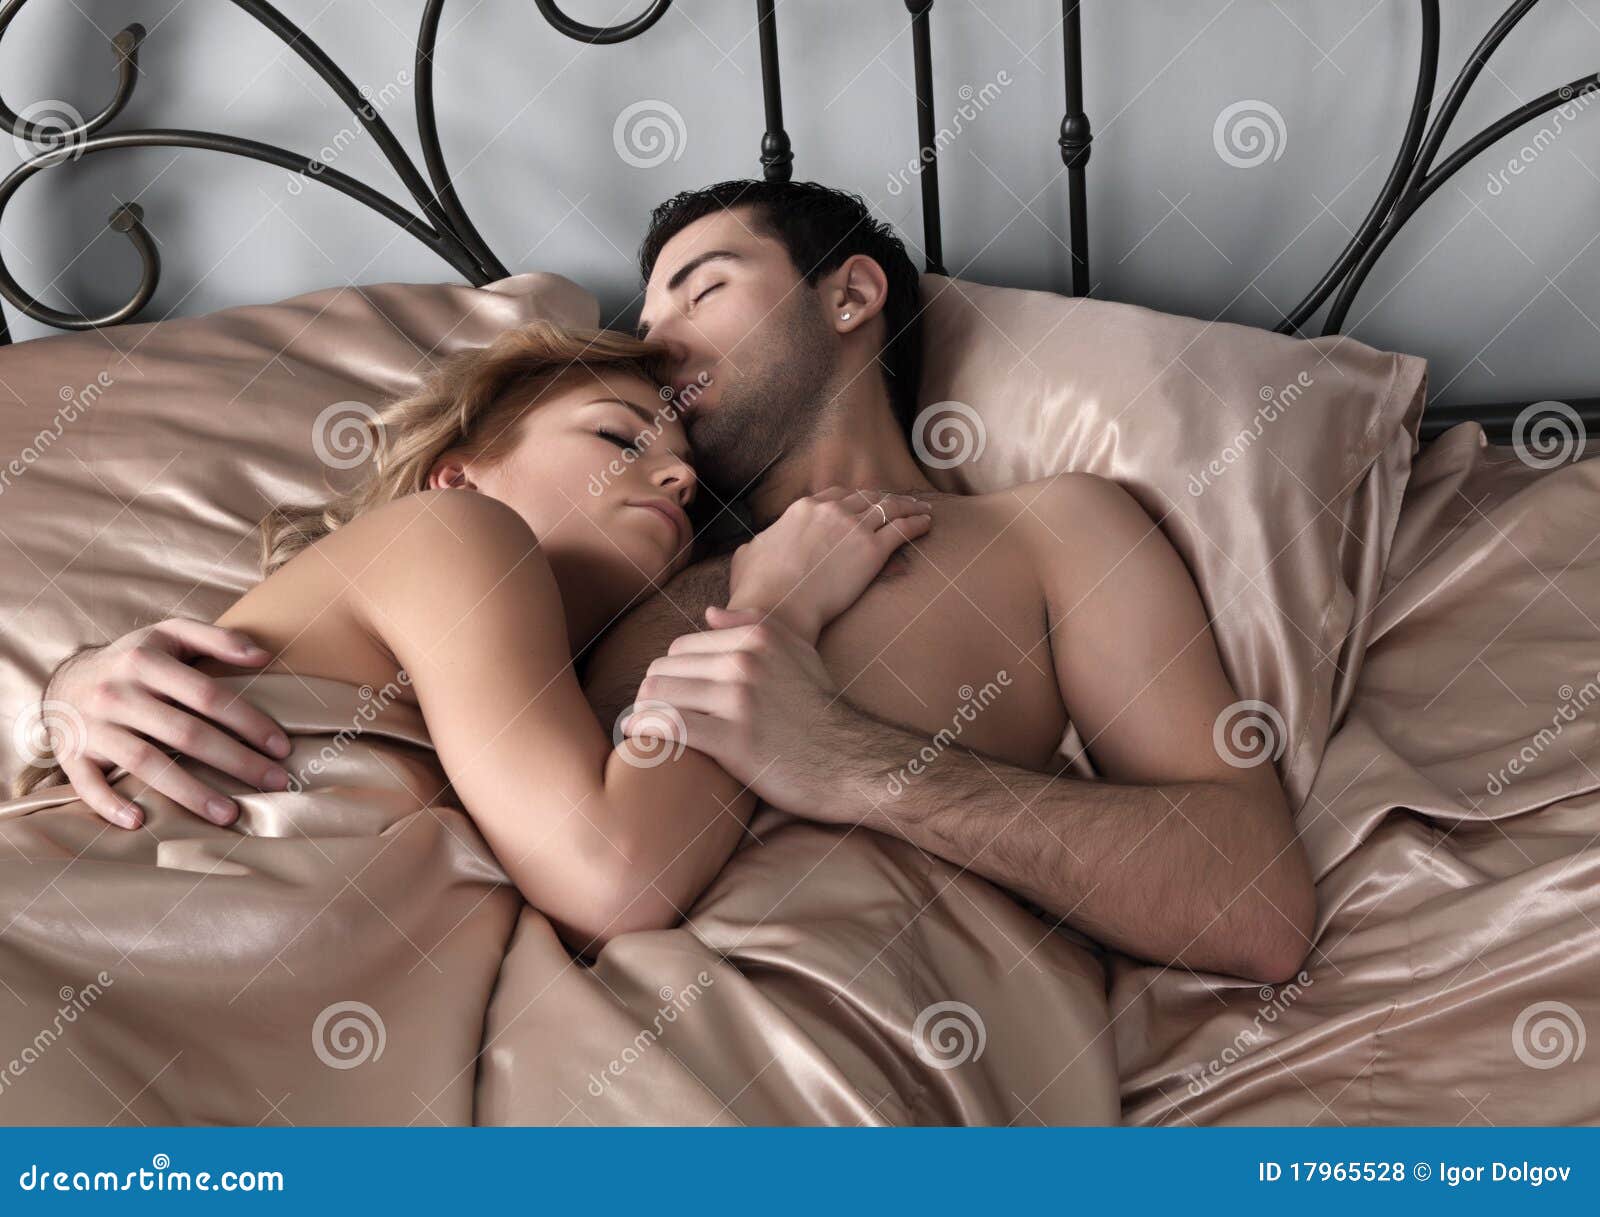 Мужчина страстно овладел на кровати своей стройной женой